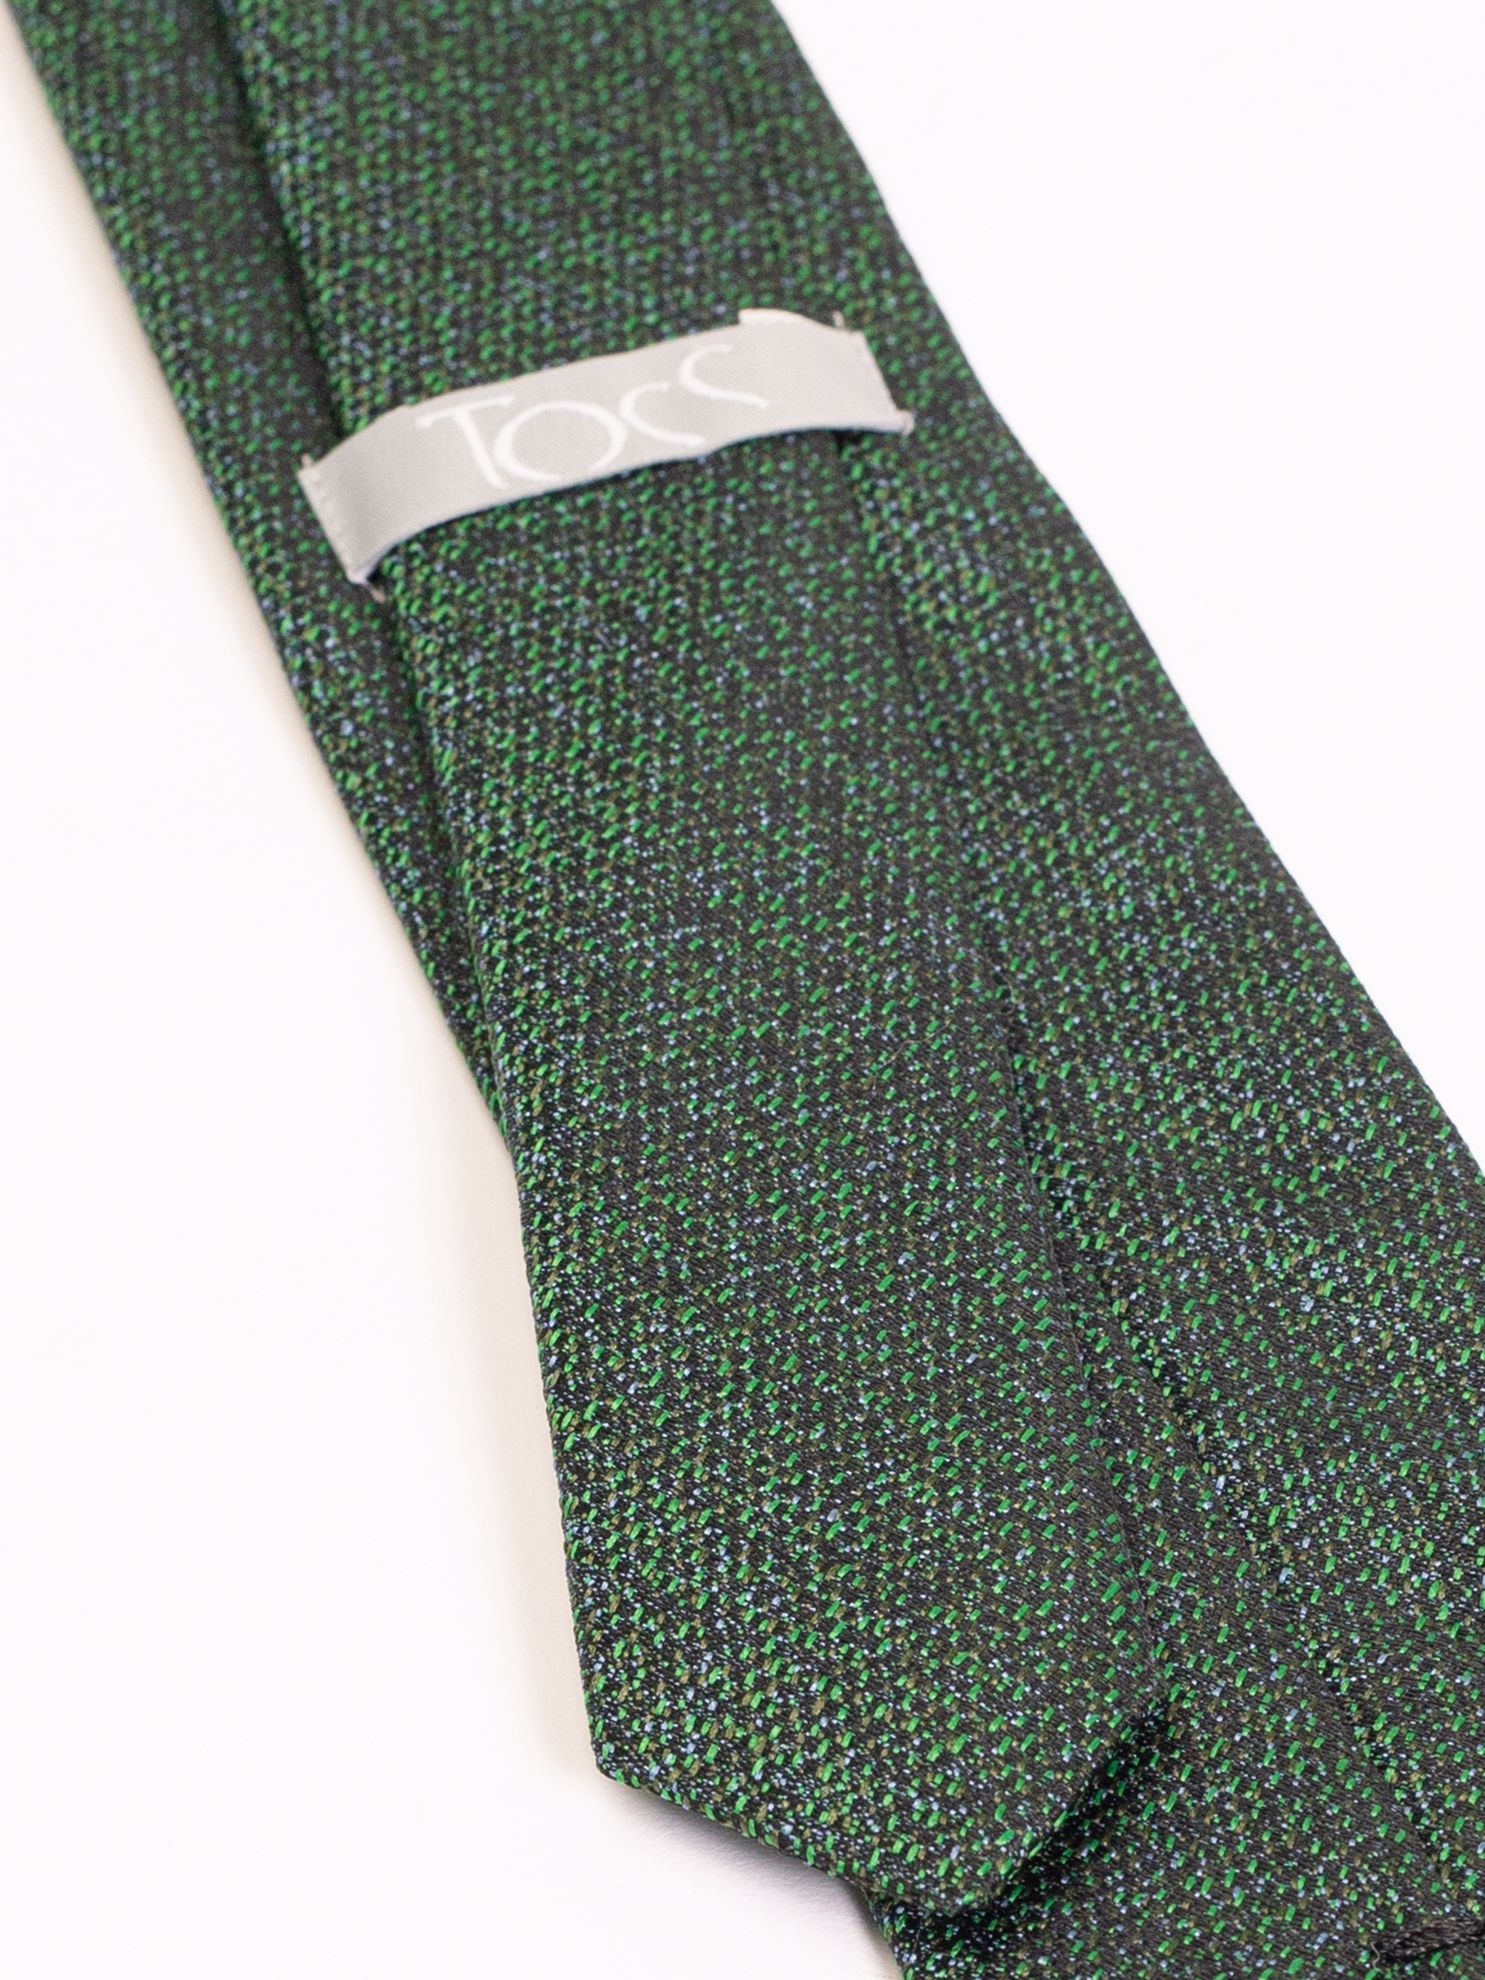 Toss Erkek Kravat-Yeşil. ürün görseli